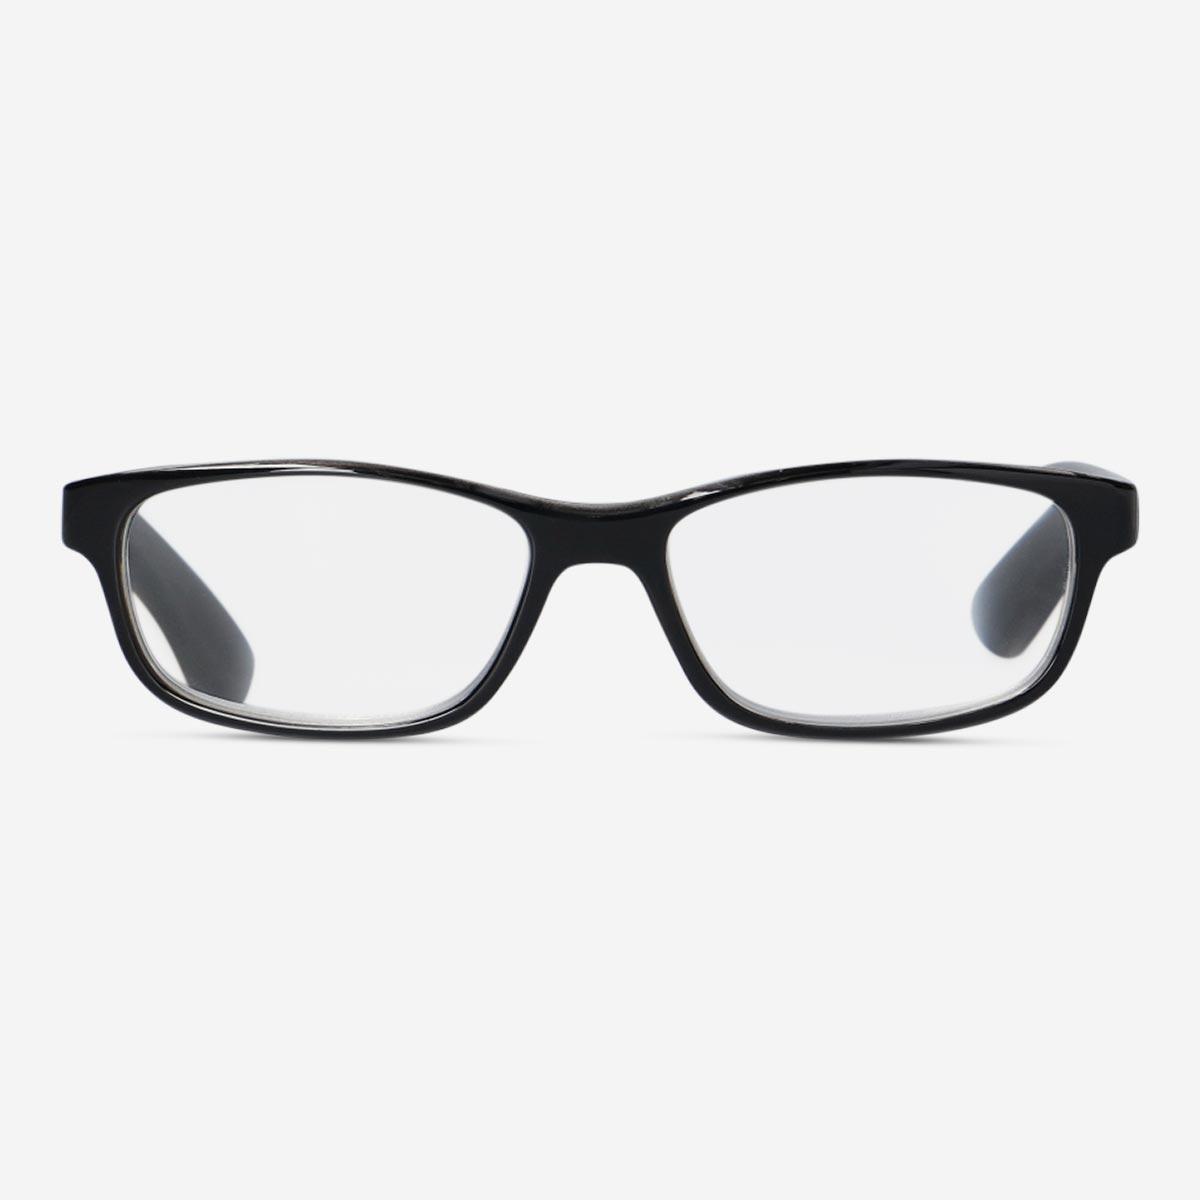 Black reading glasses. + 3.5